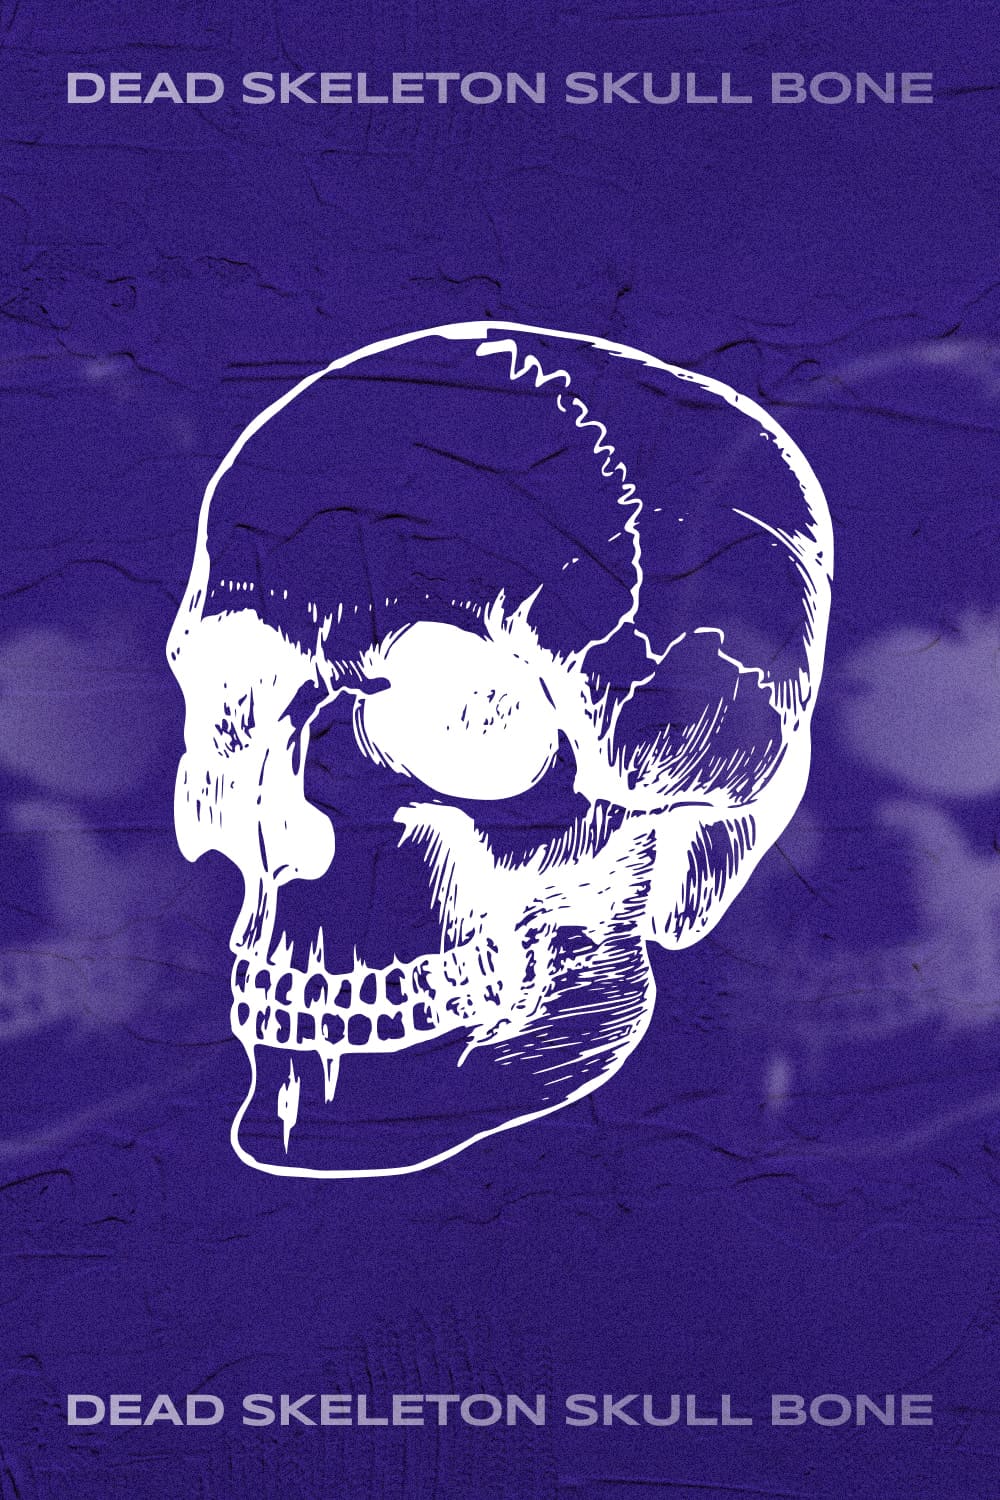 dead skeleton skull bone pinterest image.